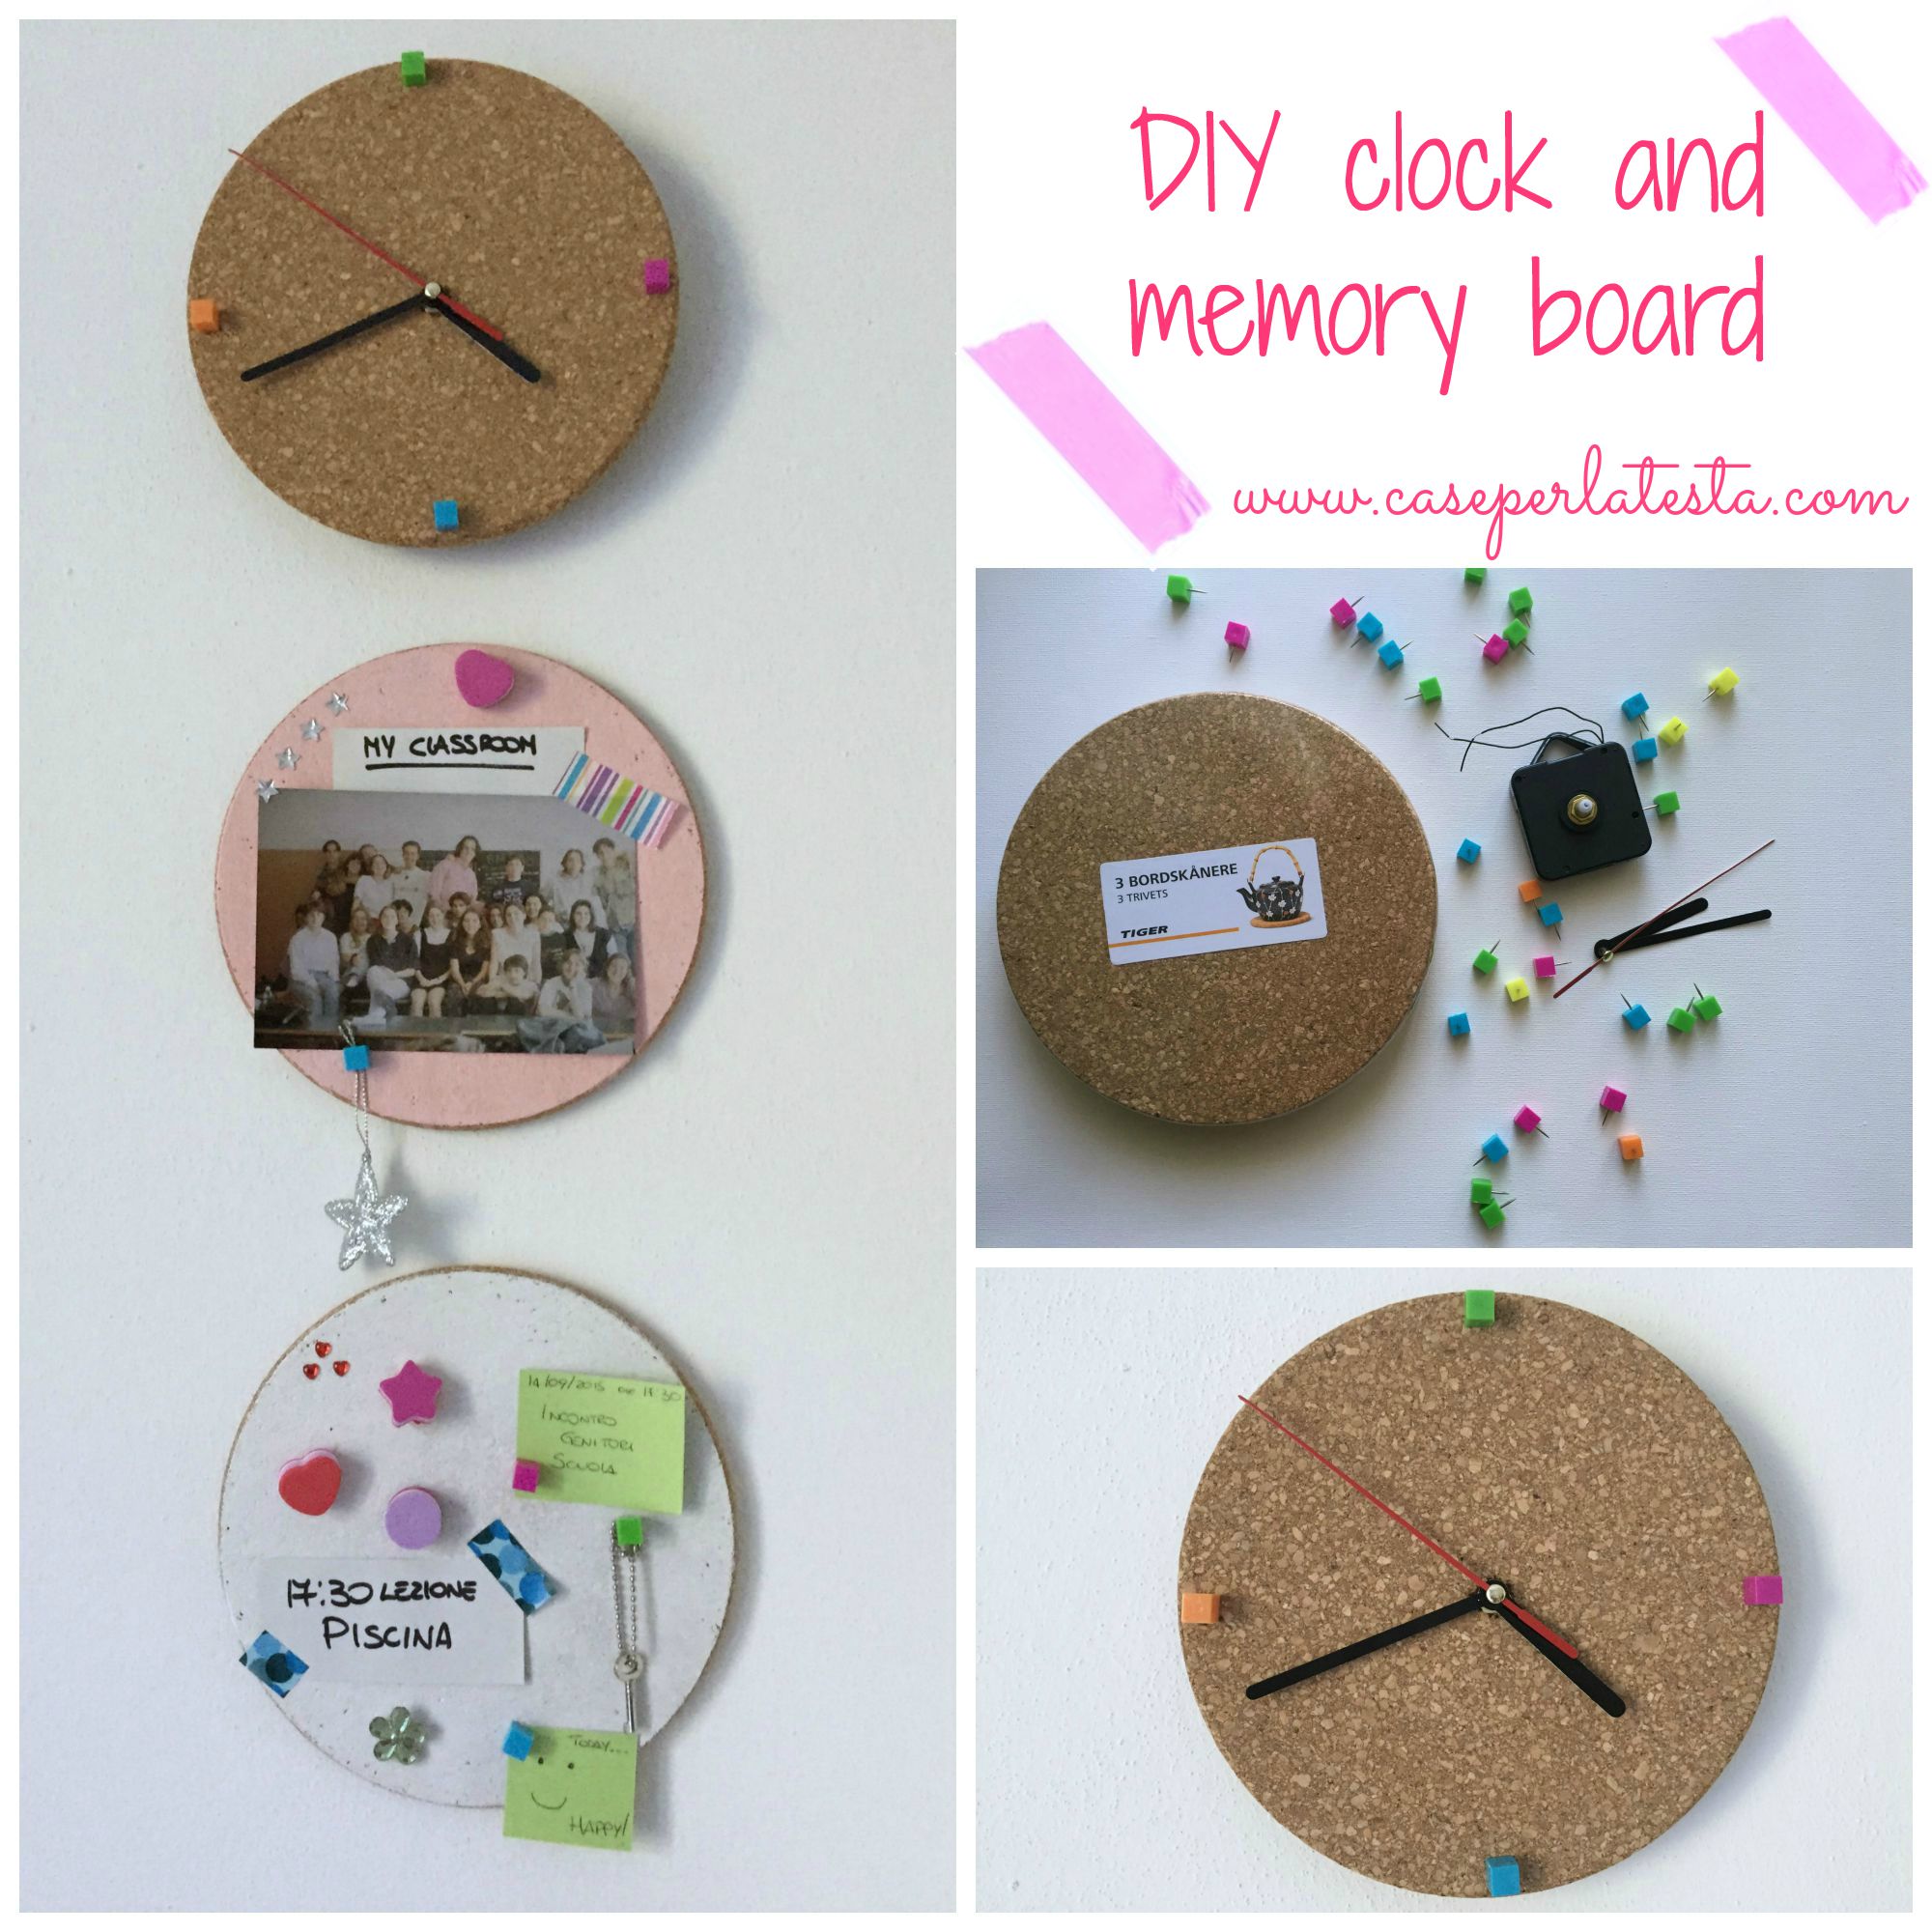 DIY_clock_and_memory_board_tutorial